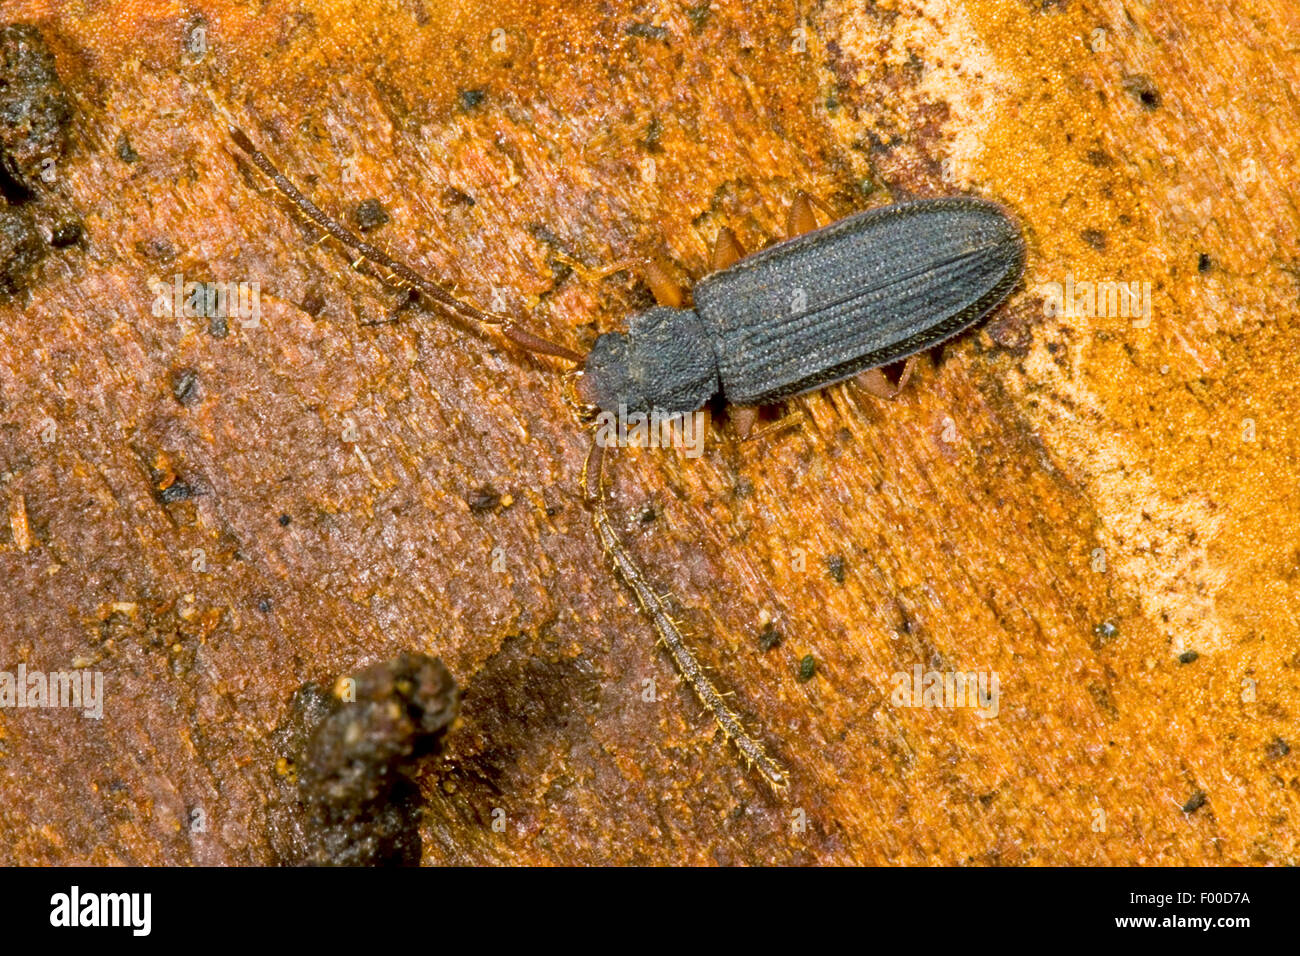 Flat bark beetle (Uleiota planata), on deadwood, Germany Stock Photo